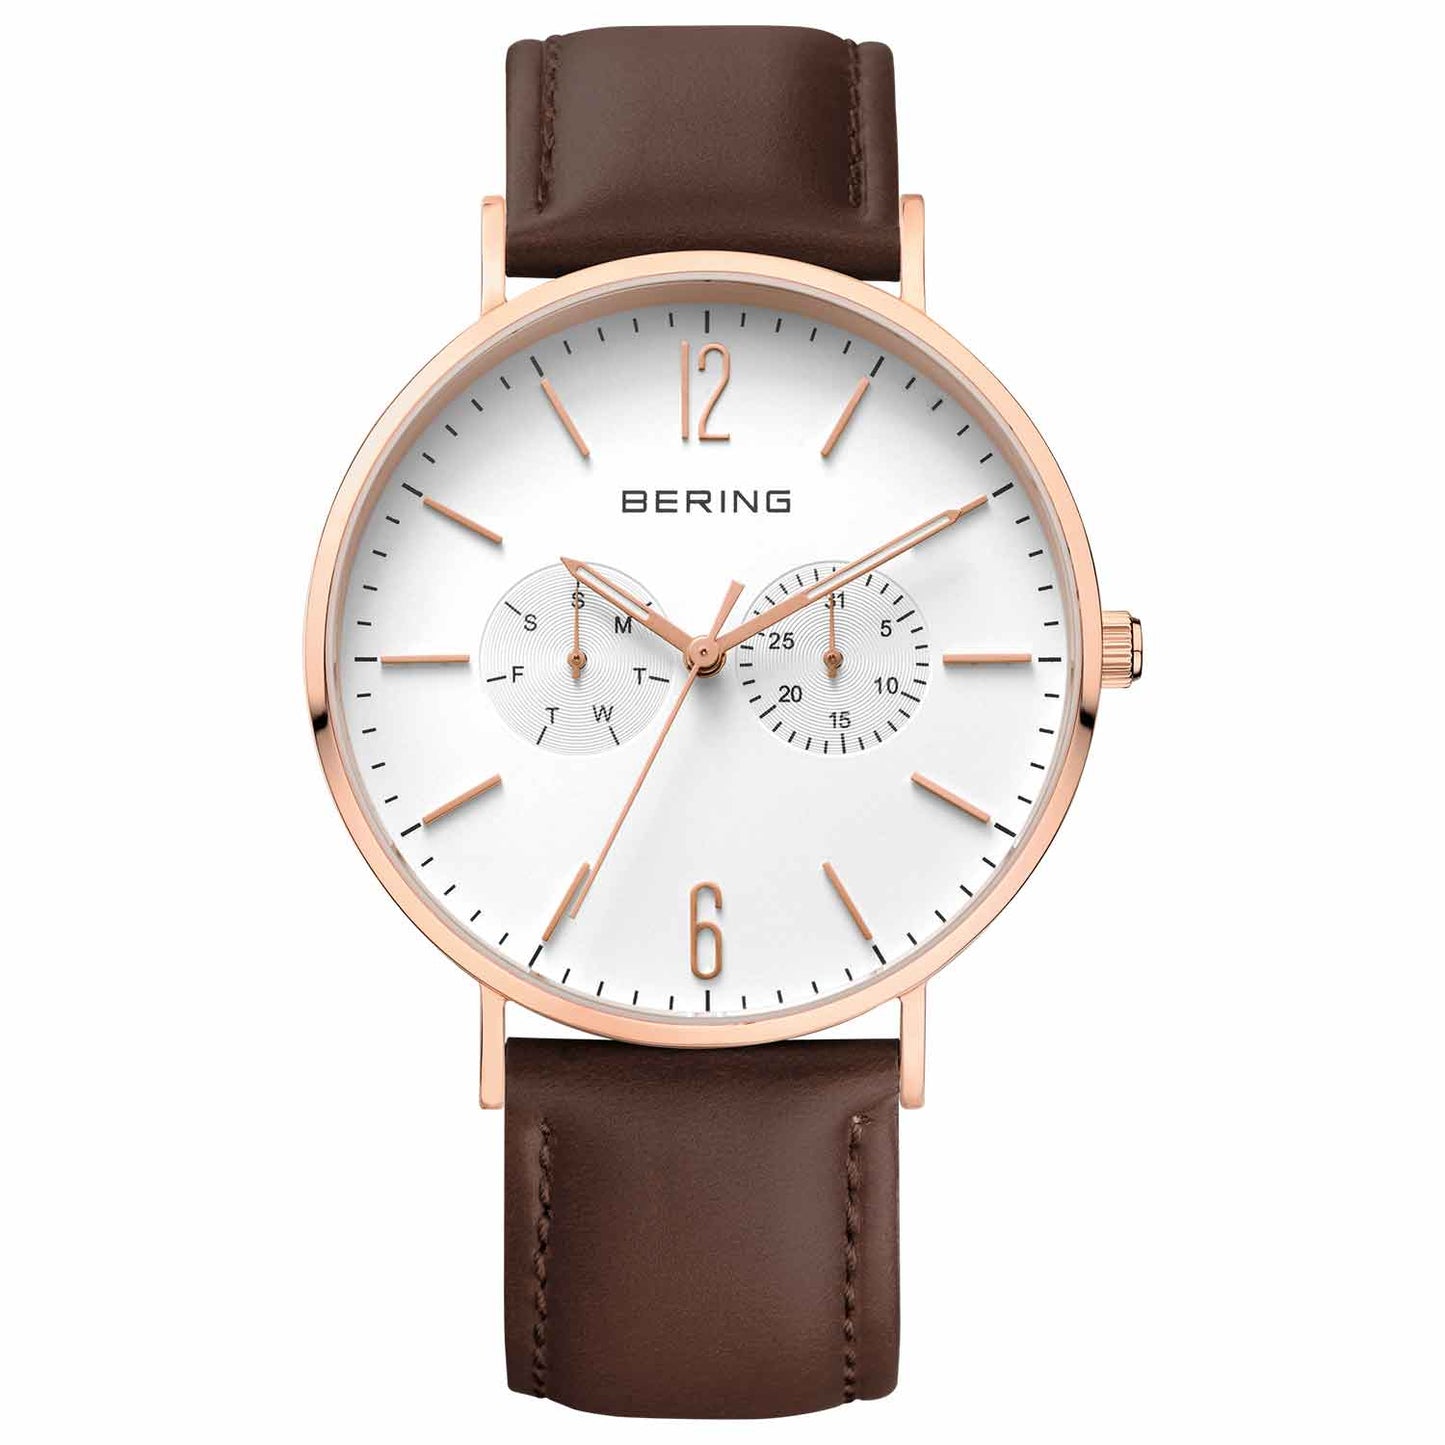 Reloj deportivo Bering multifunción de Hombre de cuero marrón